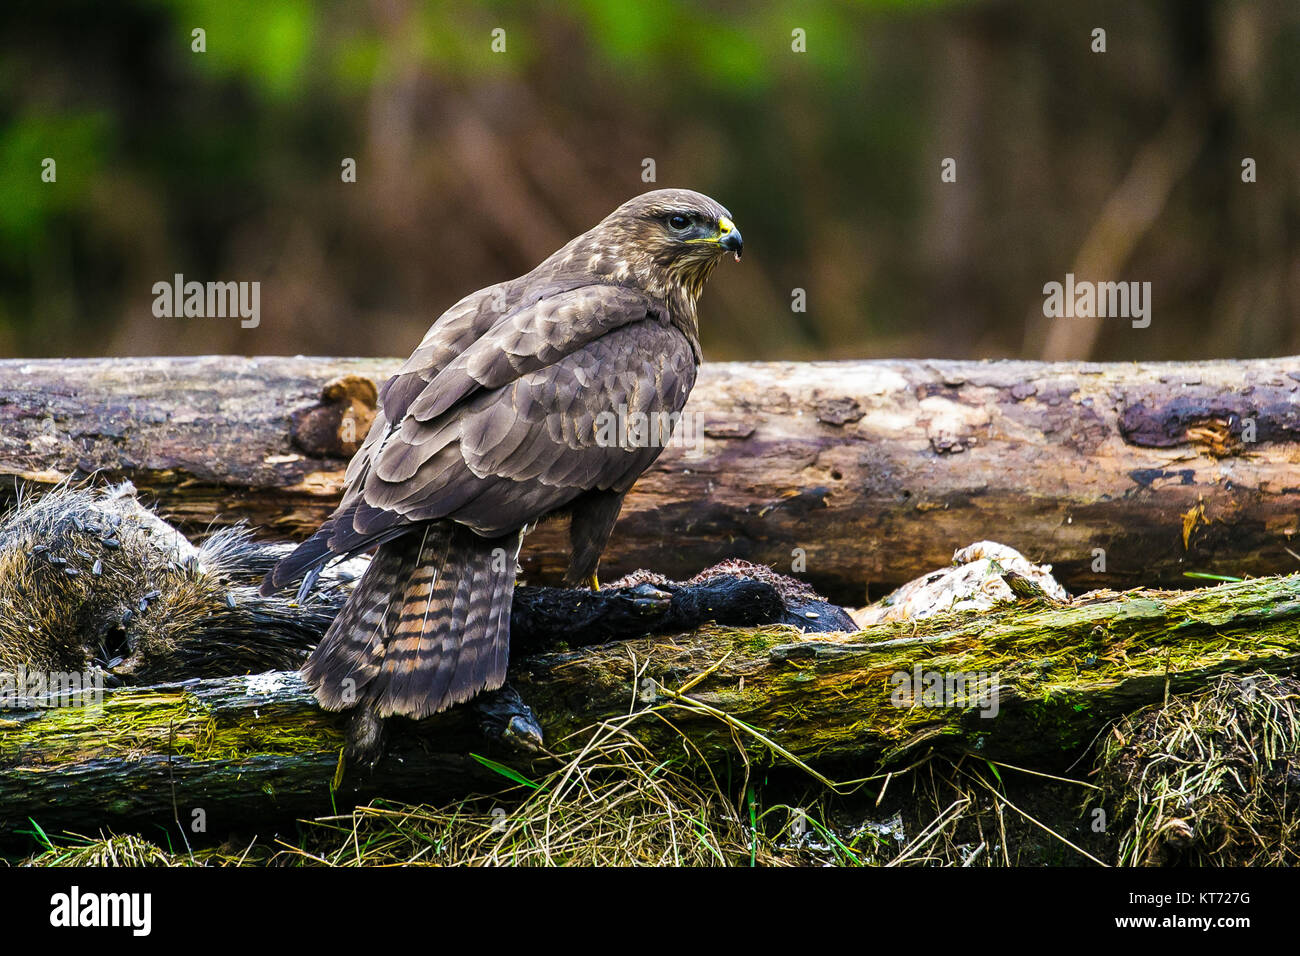 Common buzzard (Buteo buteo) in a Forest Stock Photo